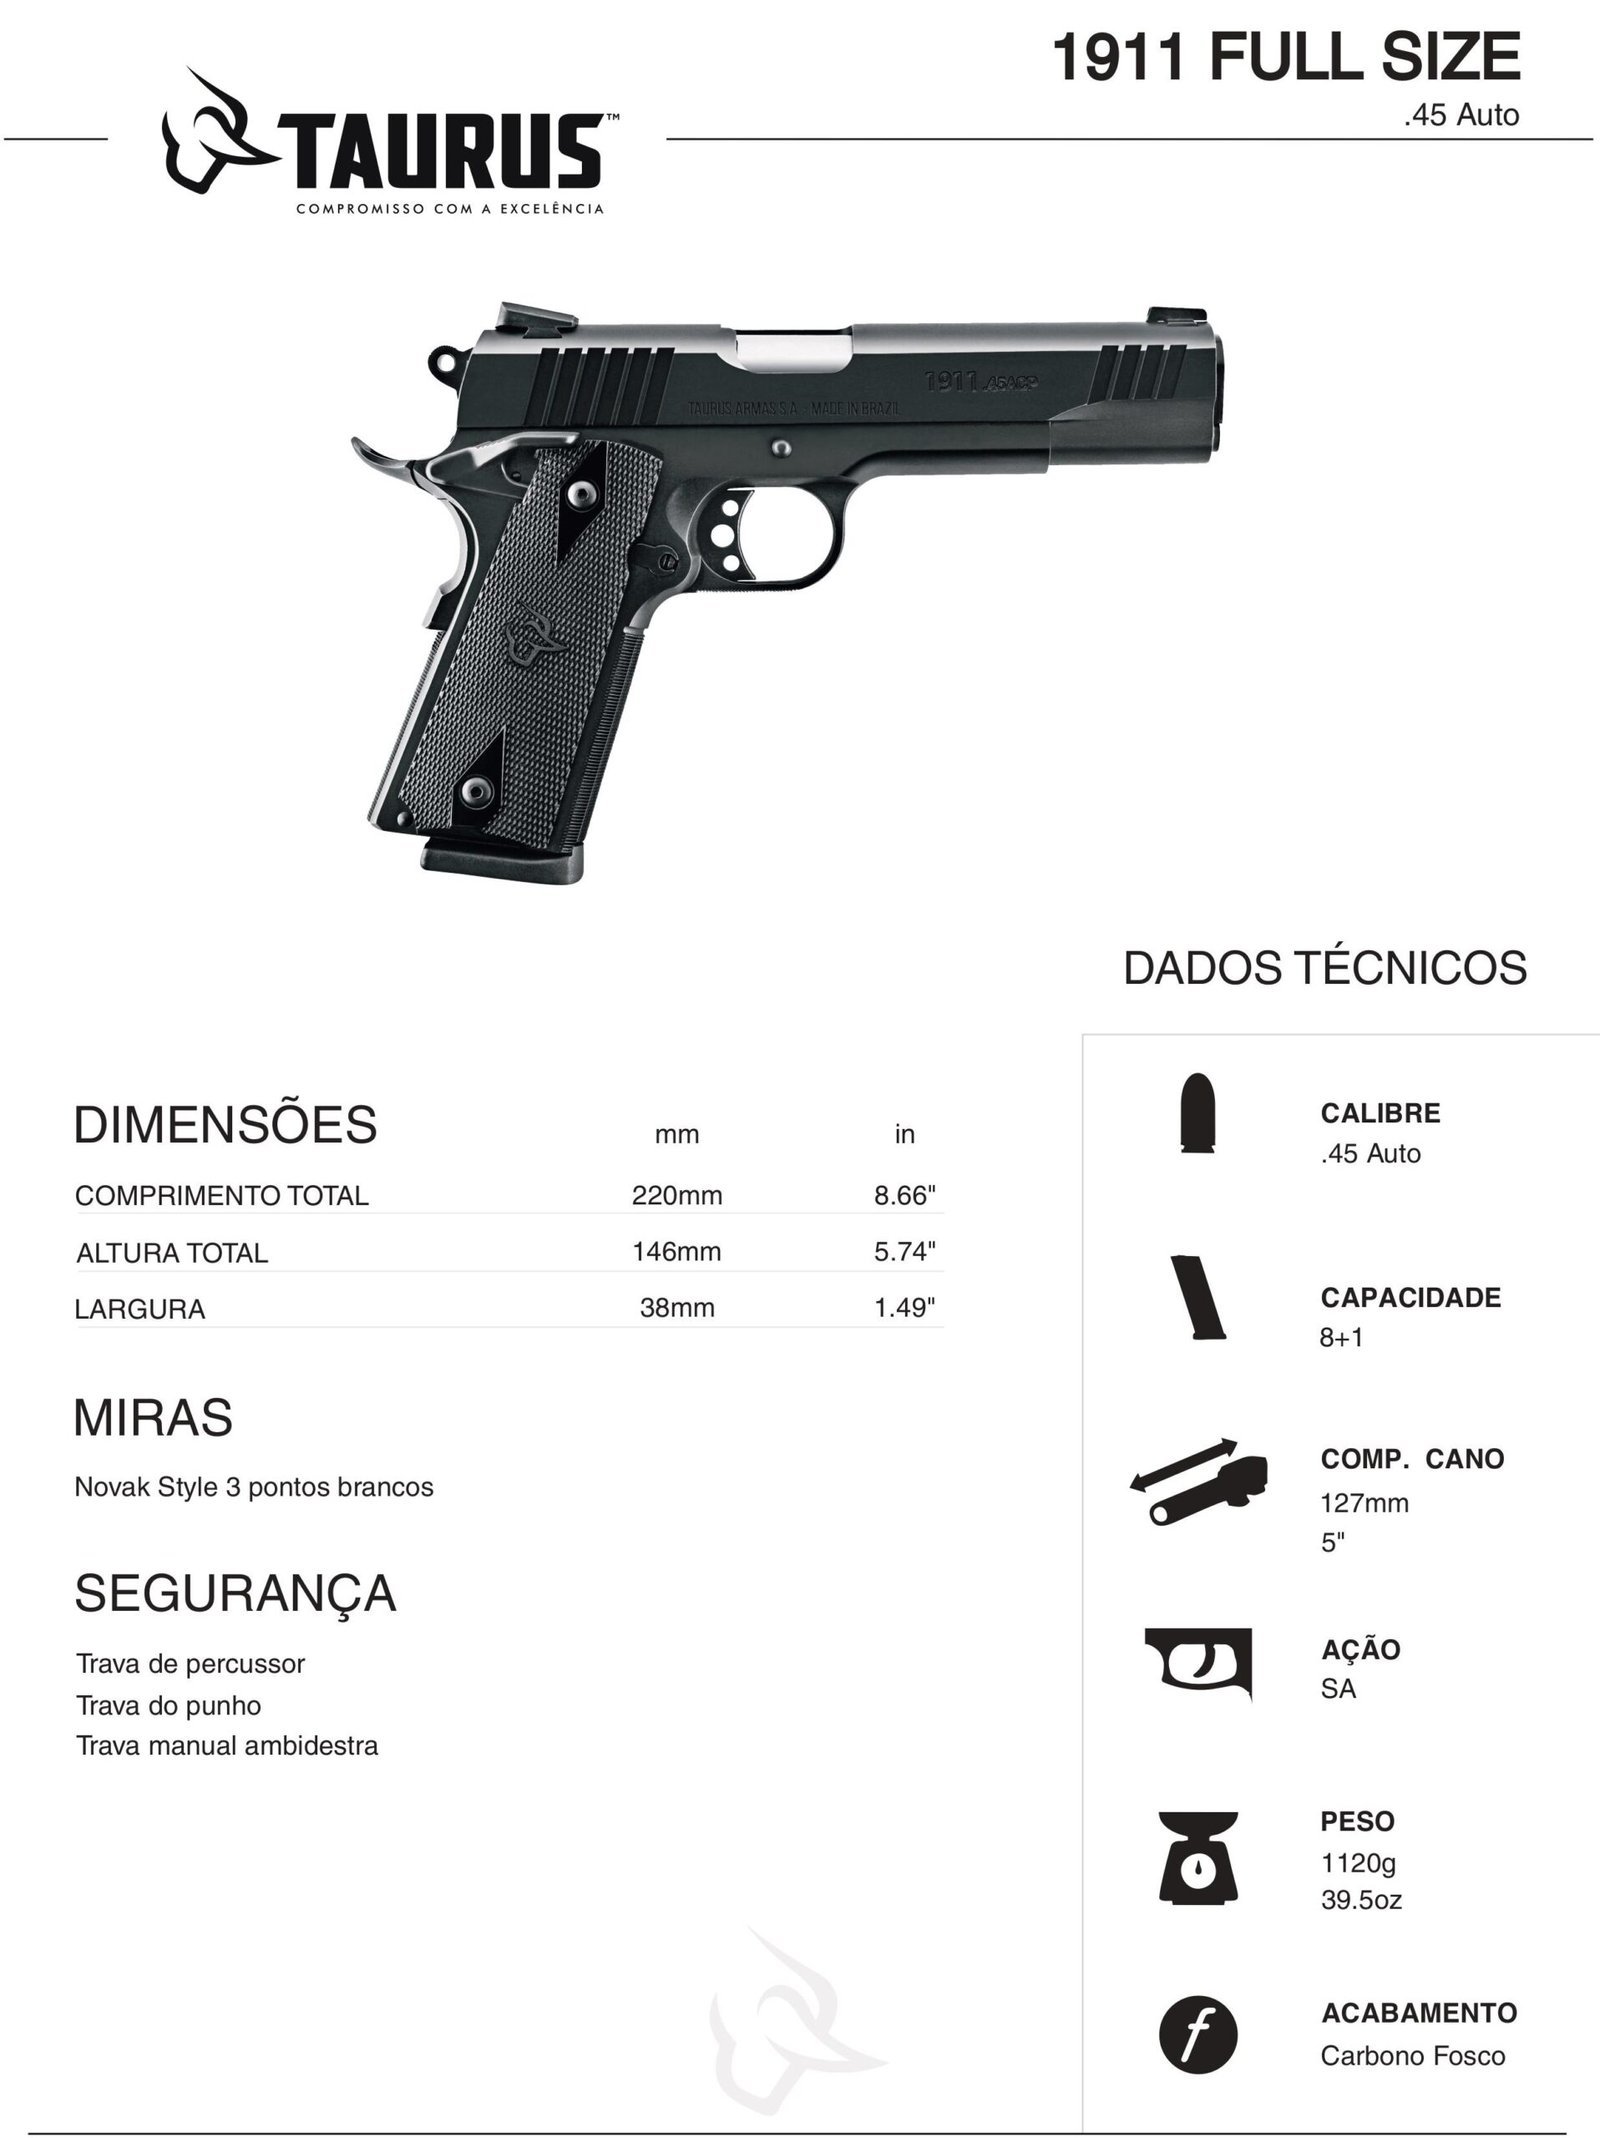 Pistola Taurus 1911 .45, comprar armas, venda de armas, armas no paraguai, armas paraguai, arma no paraguai